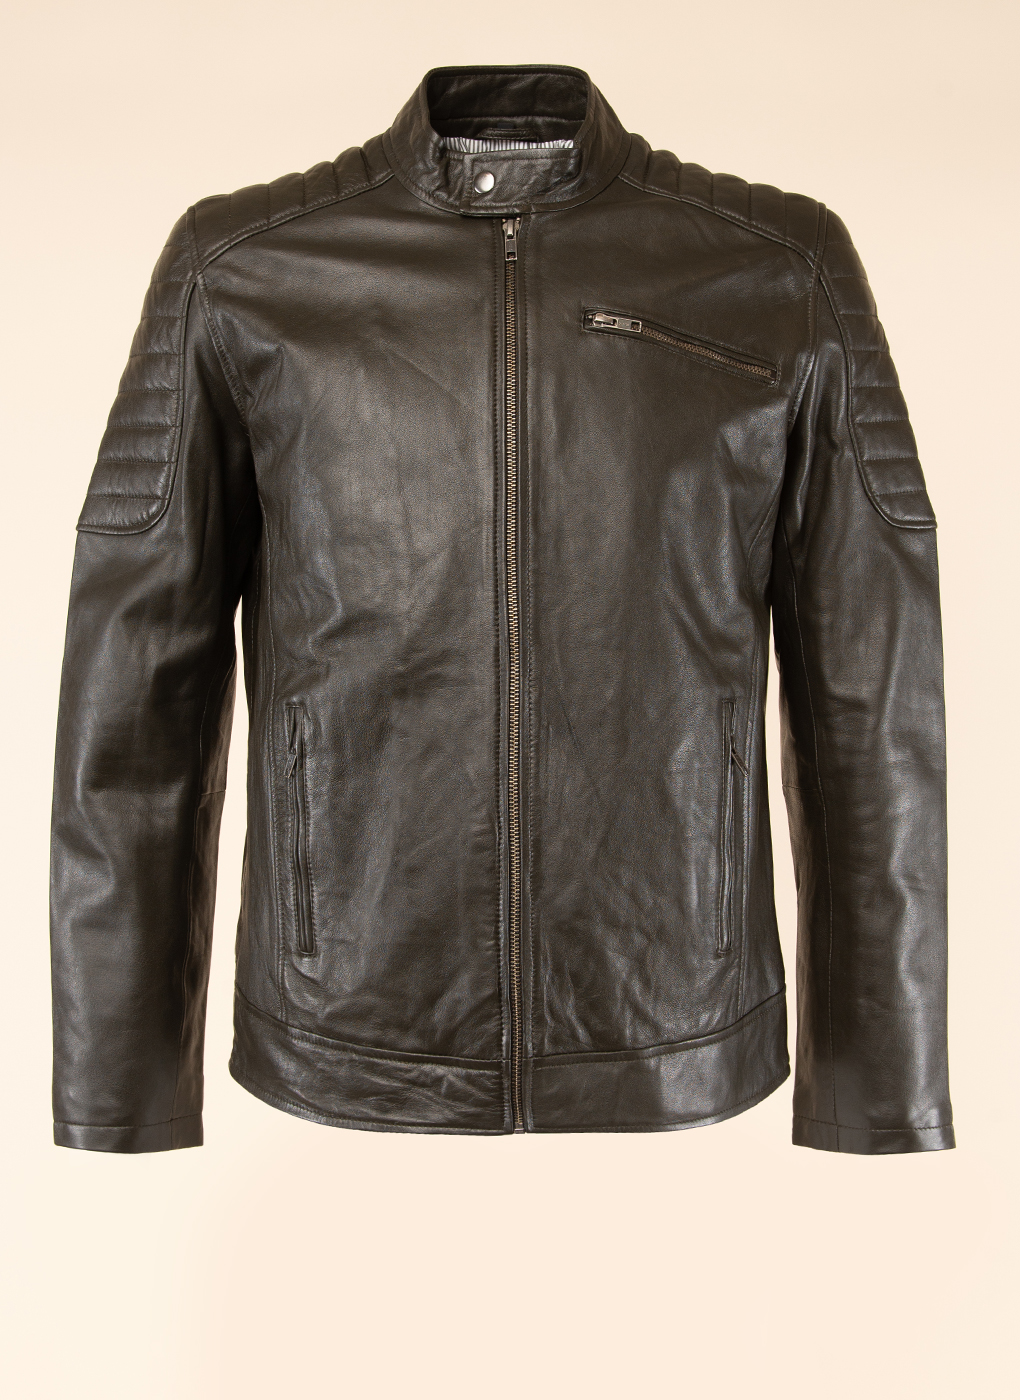 Кожаная куртка мужская Каляев 51746 коричневая 60 RU